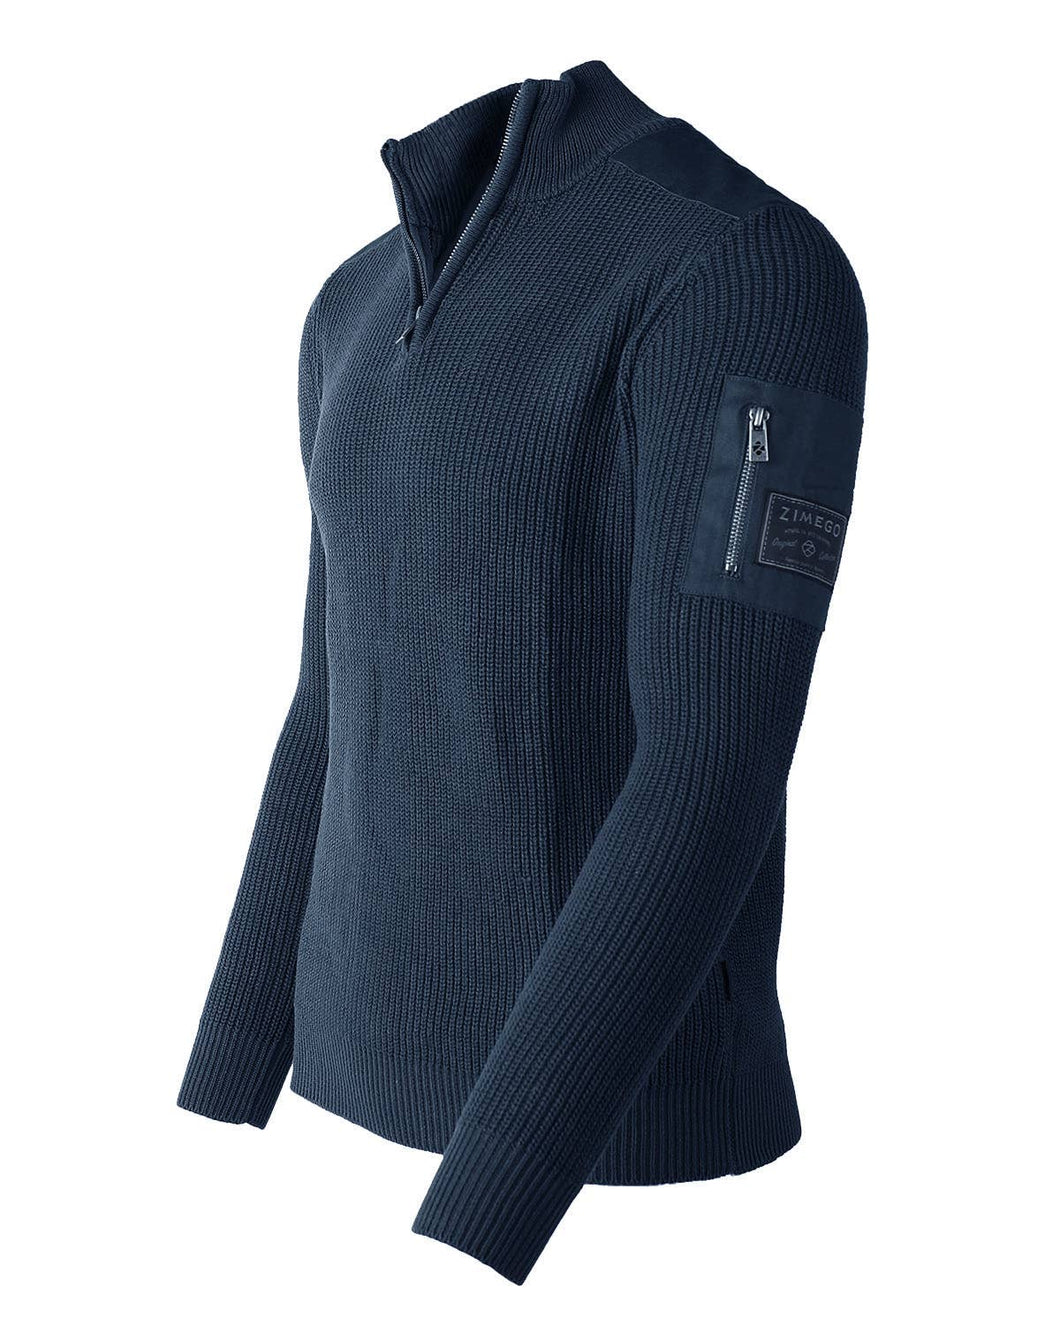 Men's Zip Up Sweater - Navy